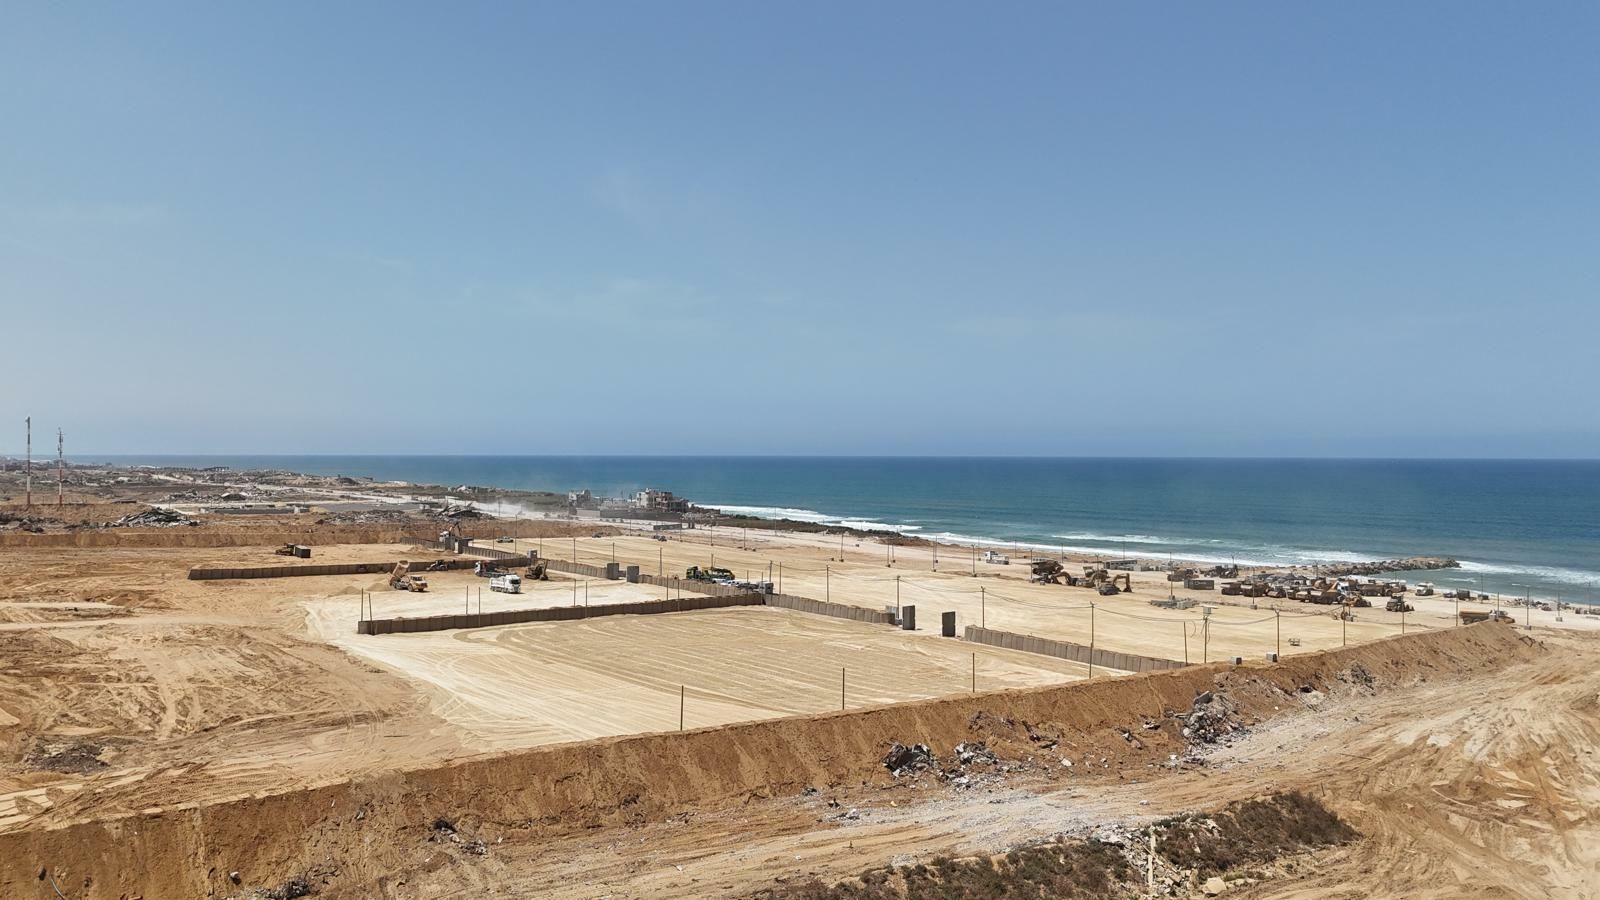 Israel-Hamas-Krieg: IDF weiht 27 Hektar großes Schwimmdock ein, um Hilfsgüter nach Gaza zu liefern |  Live